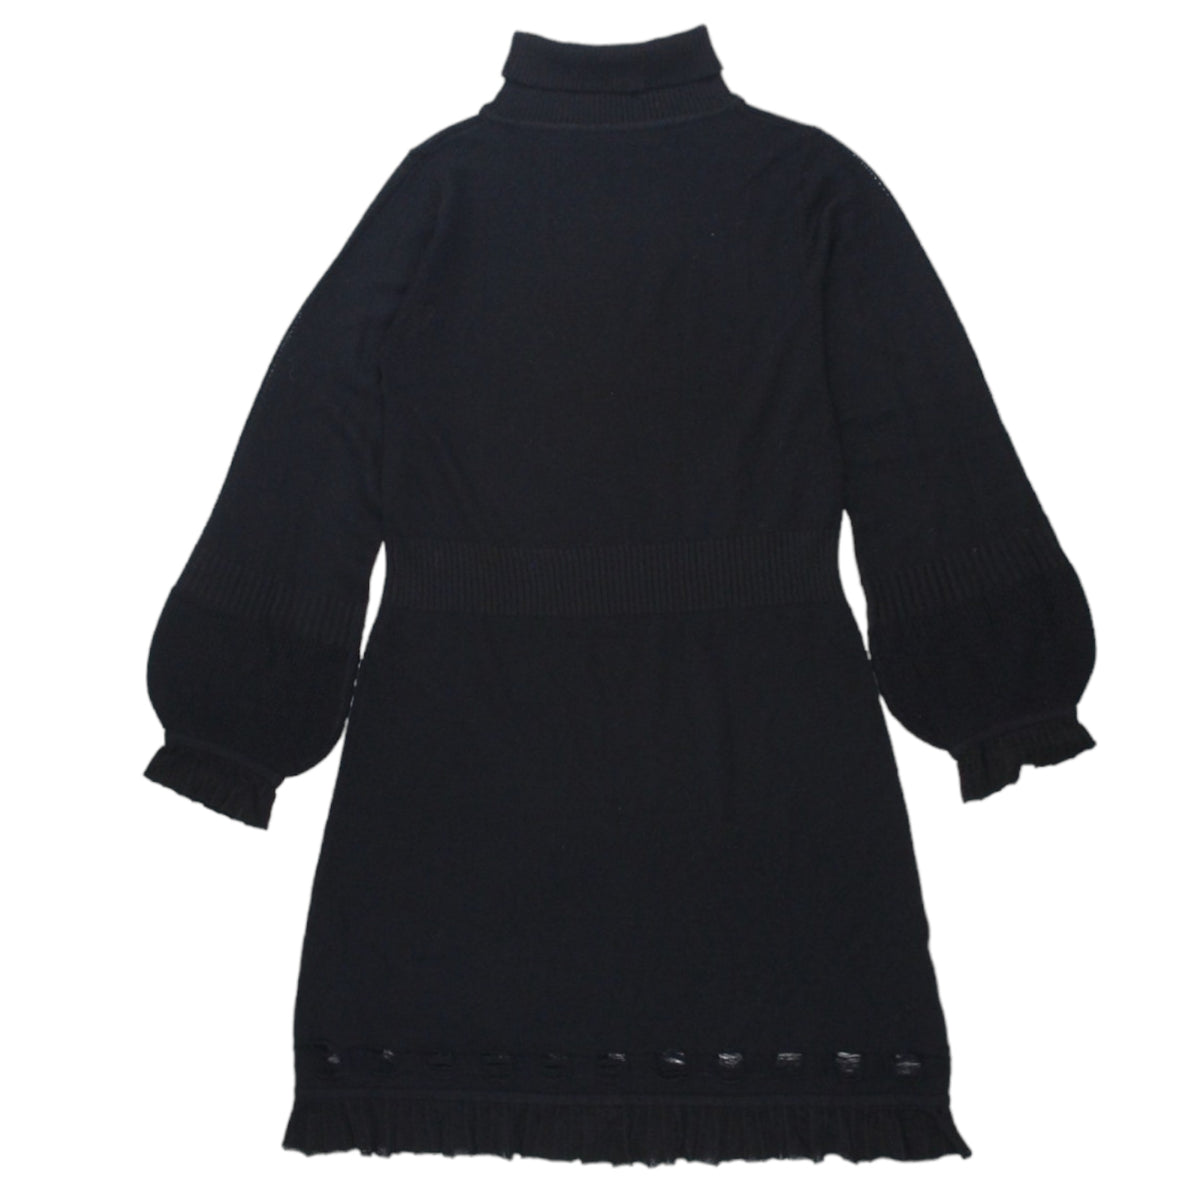 Bella Freud Black Old Skool Knit Dress